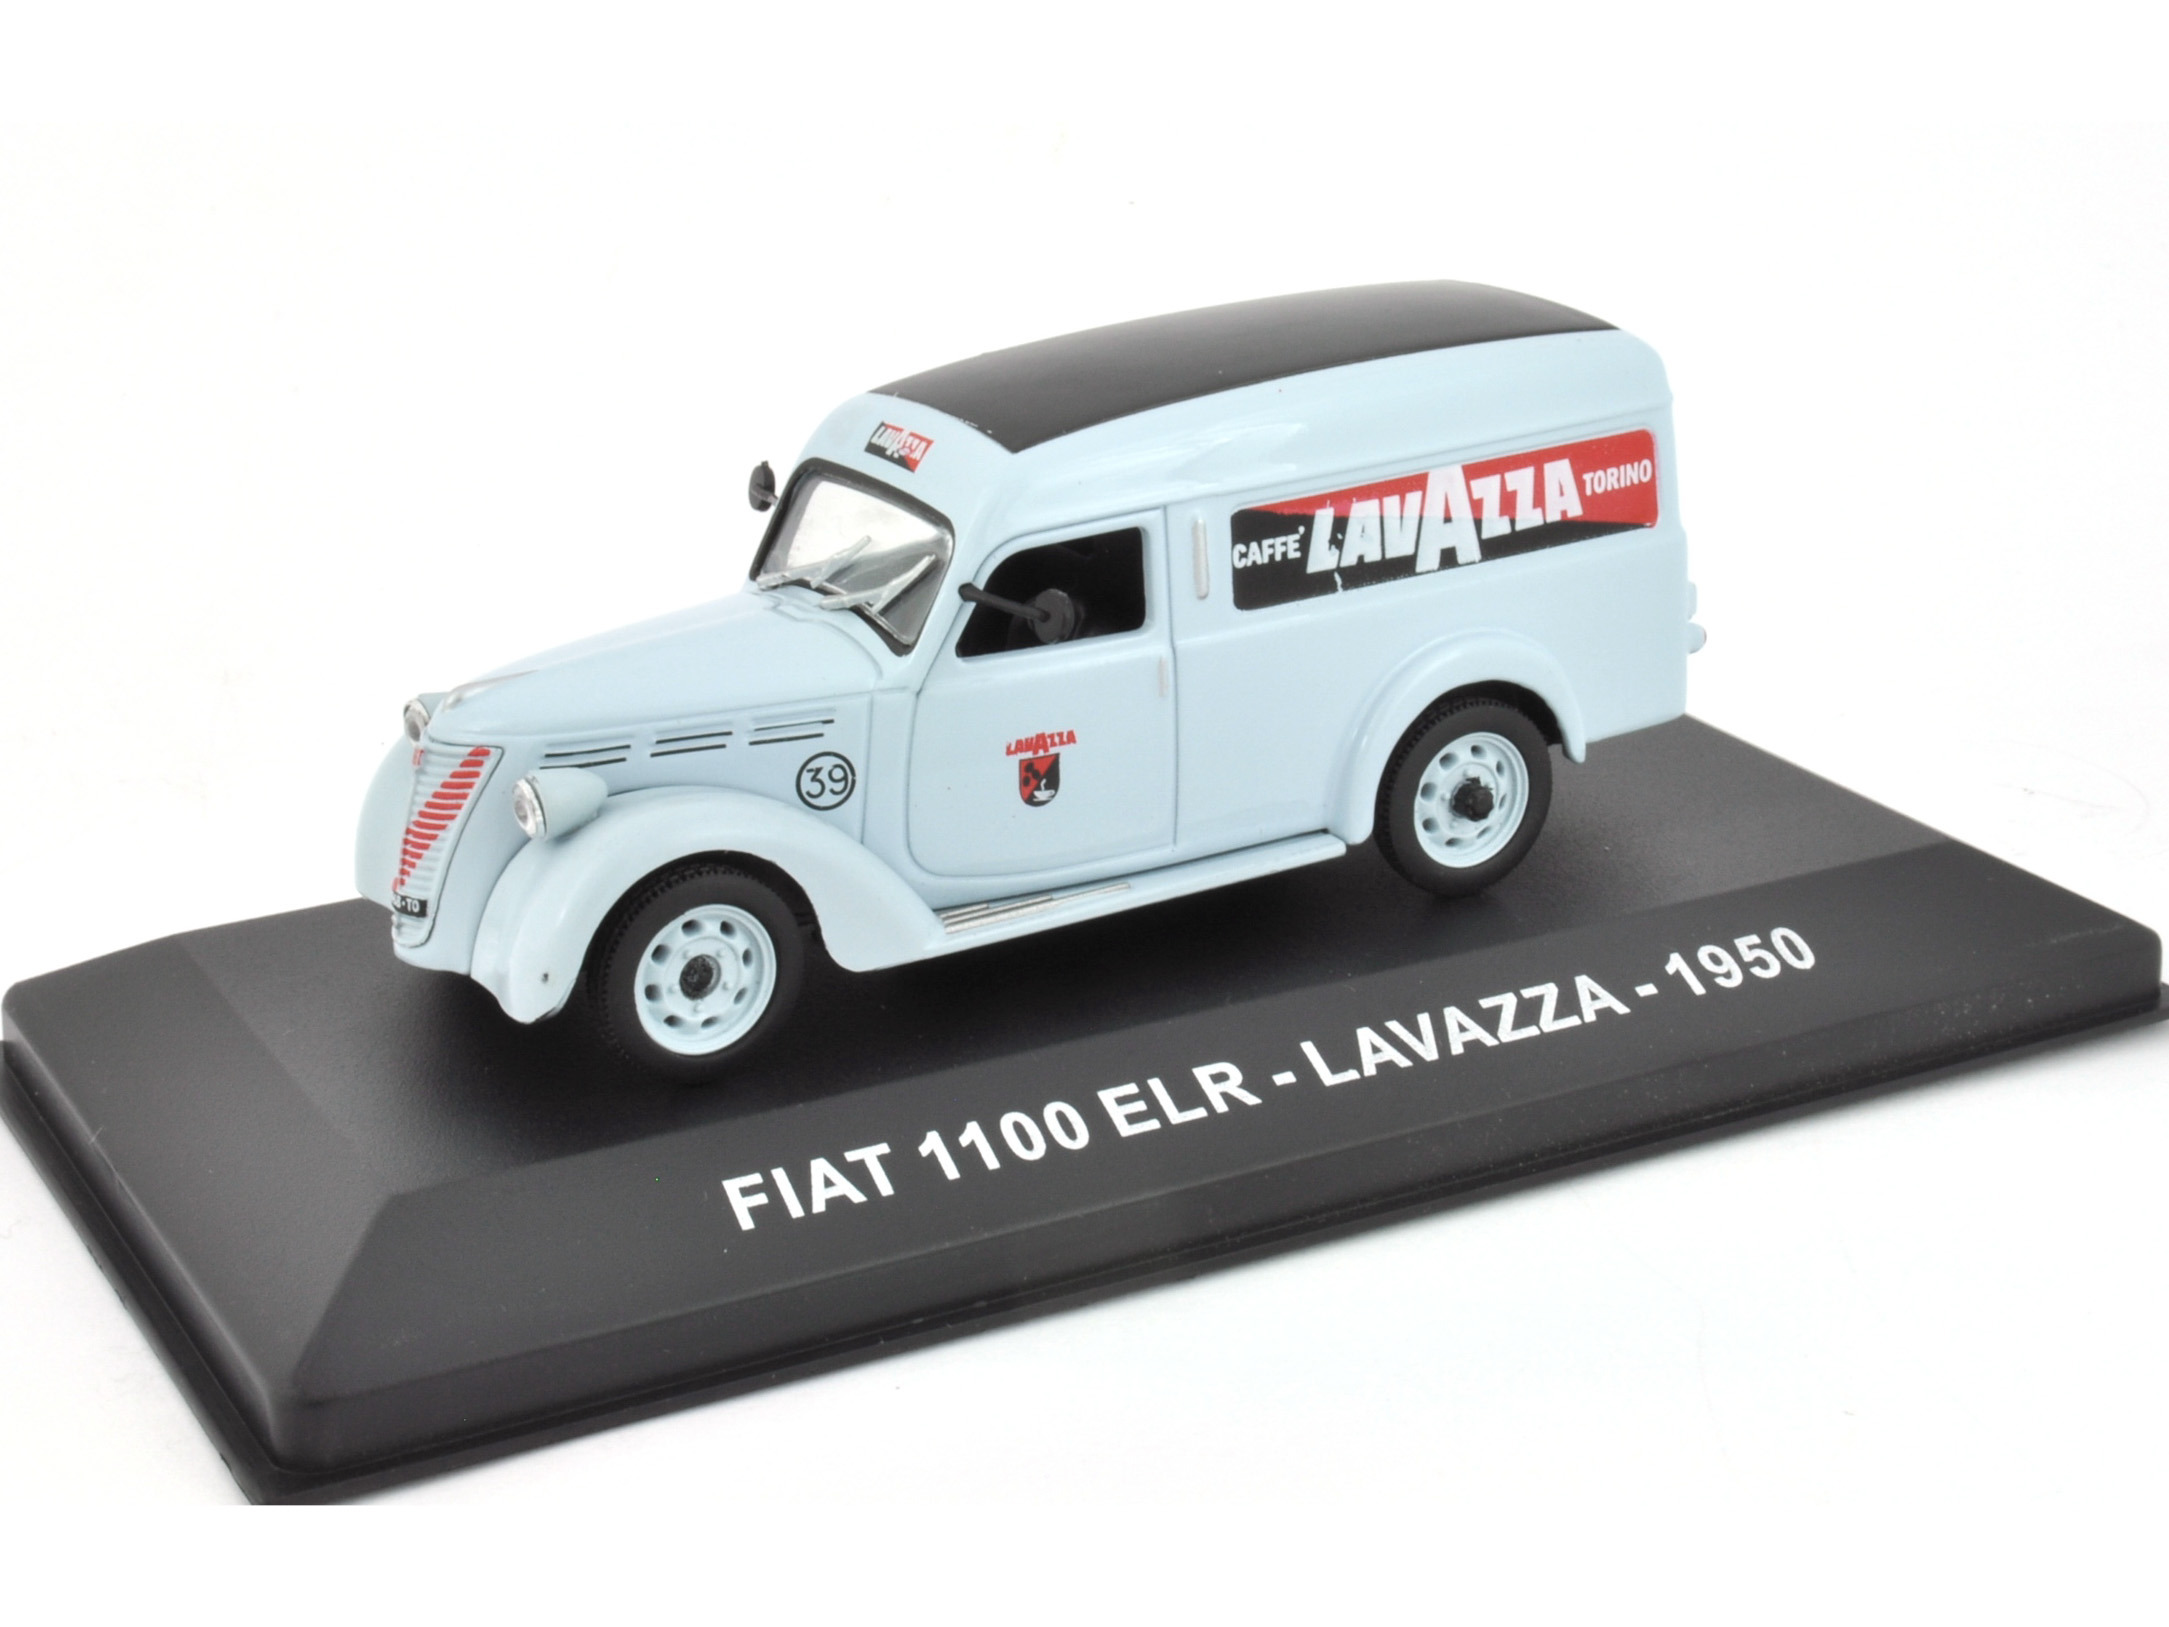 FIAT 1100 ELR - LAVAZZA - 1950